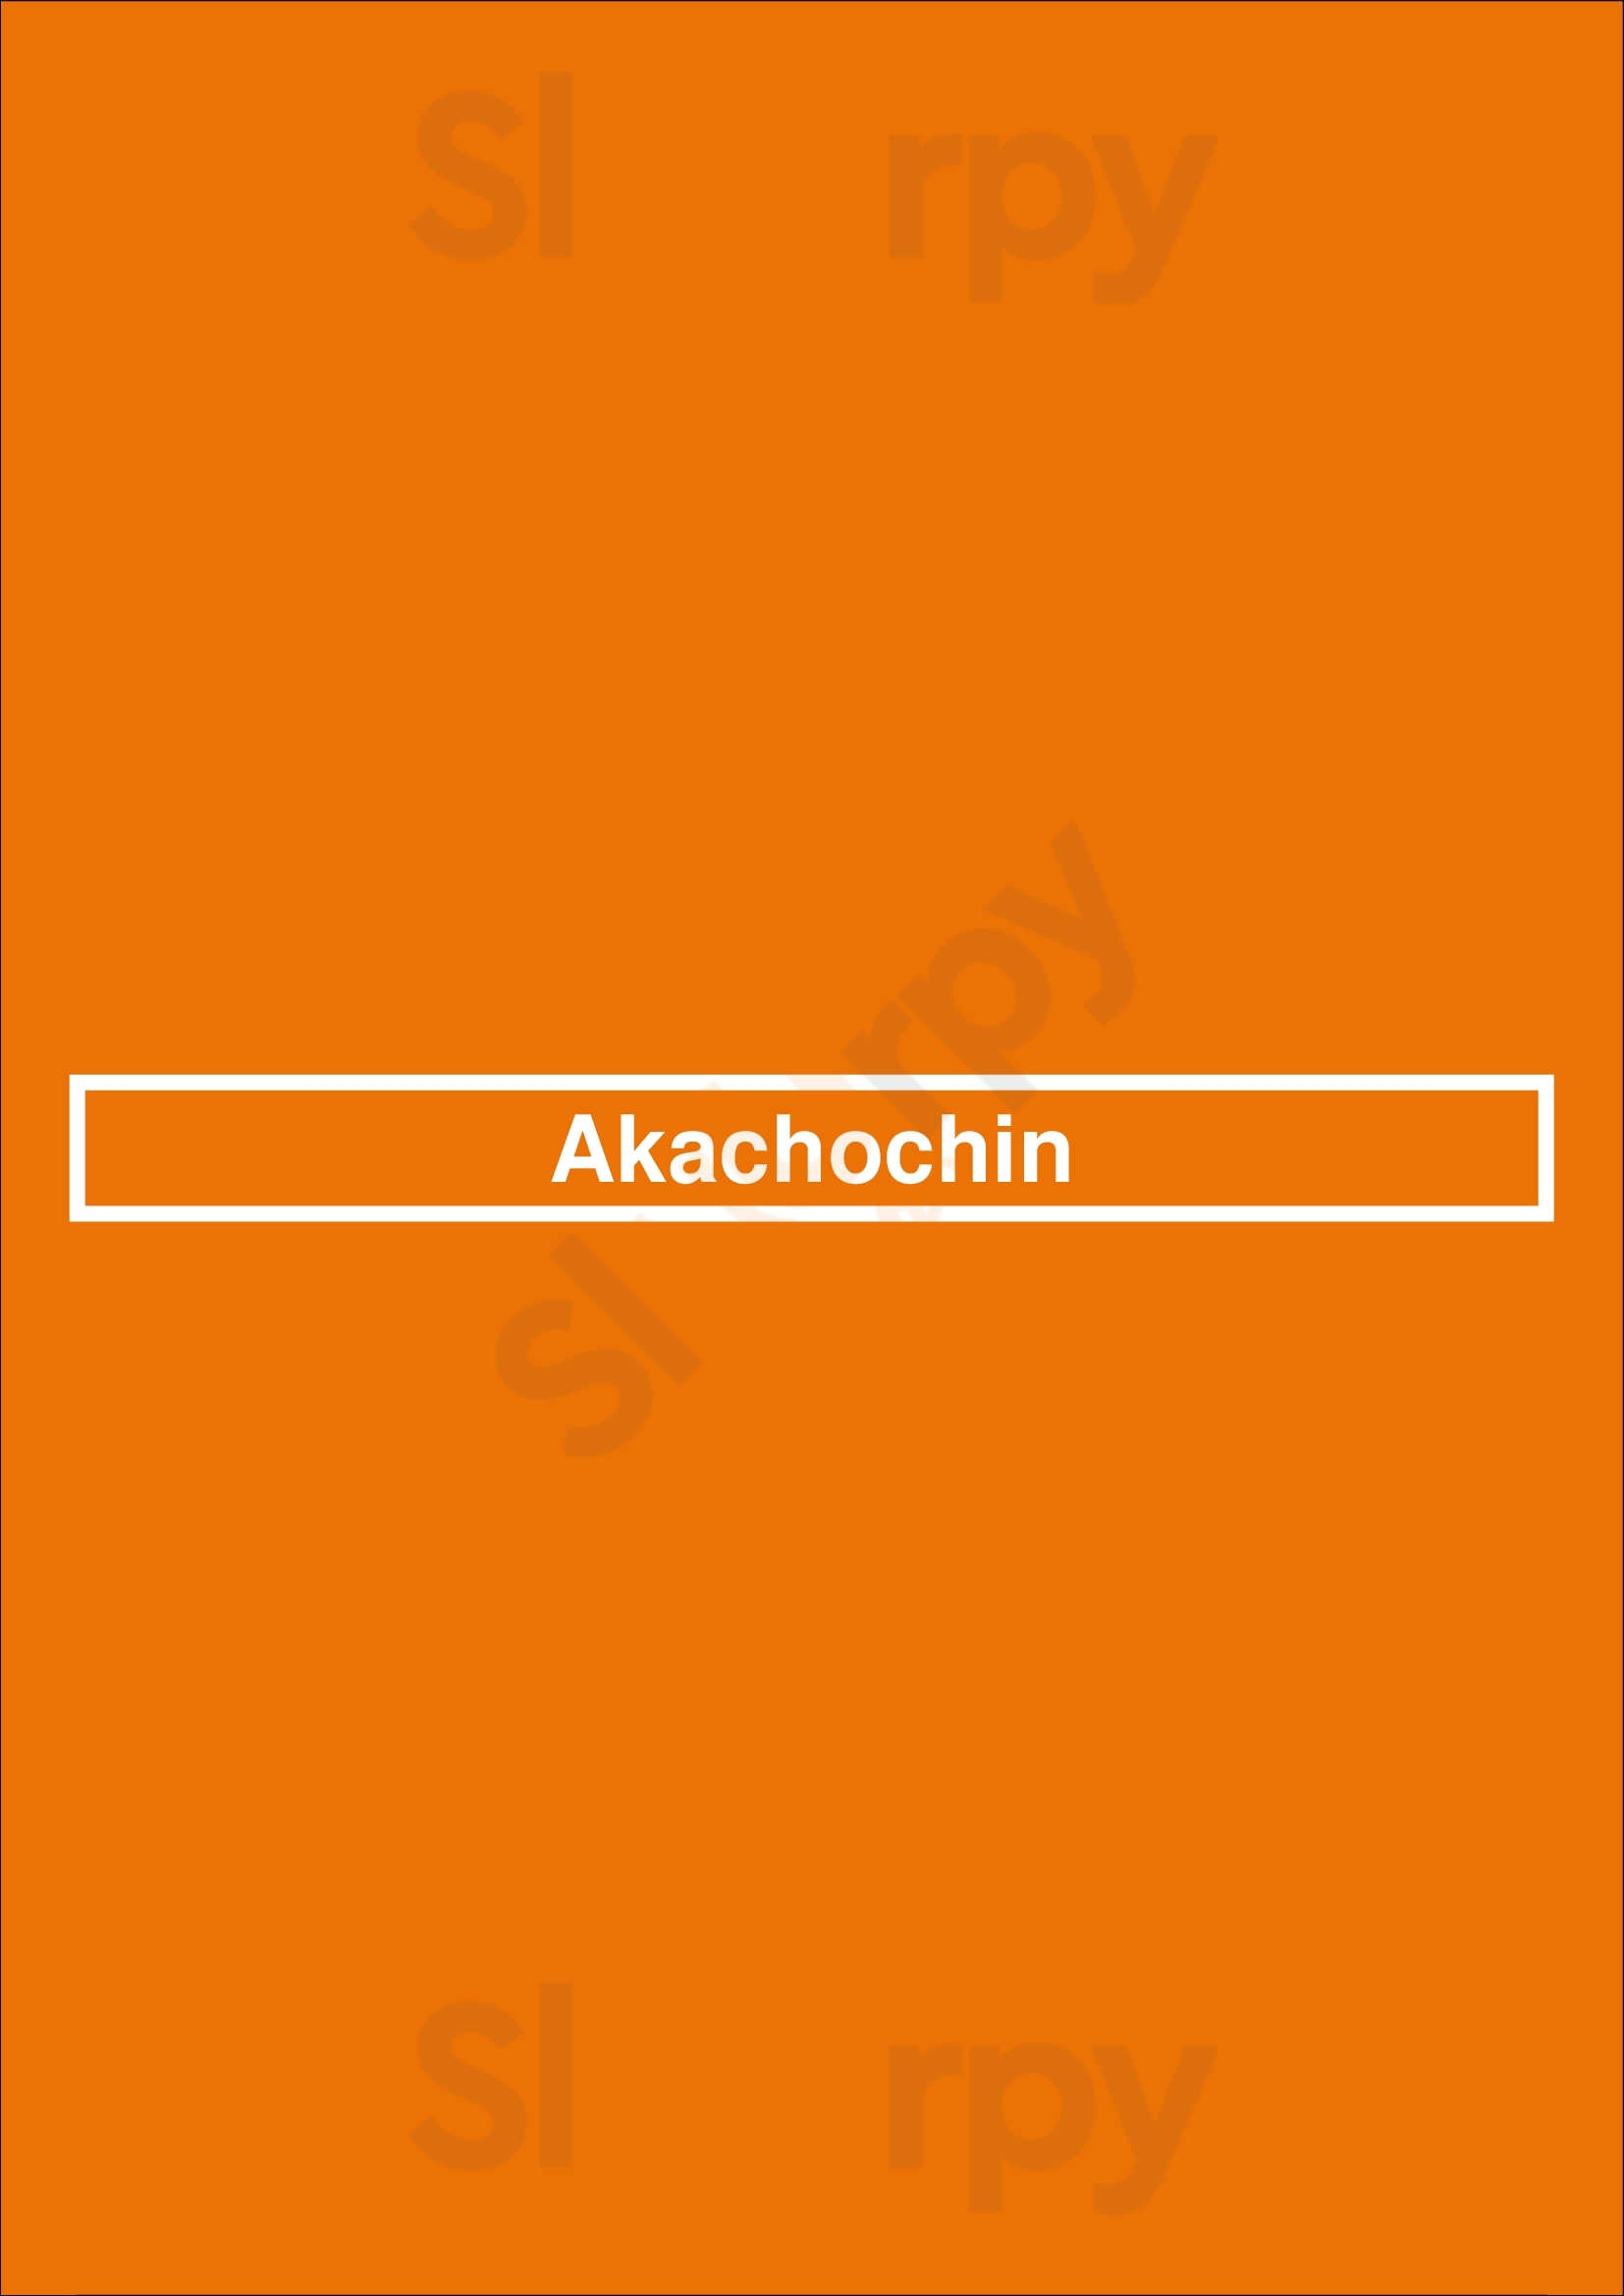 Akachochin Melbourne Menu - 1